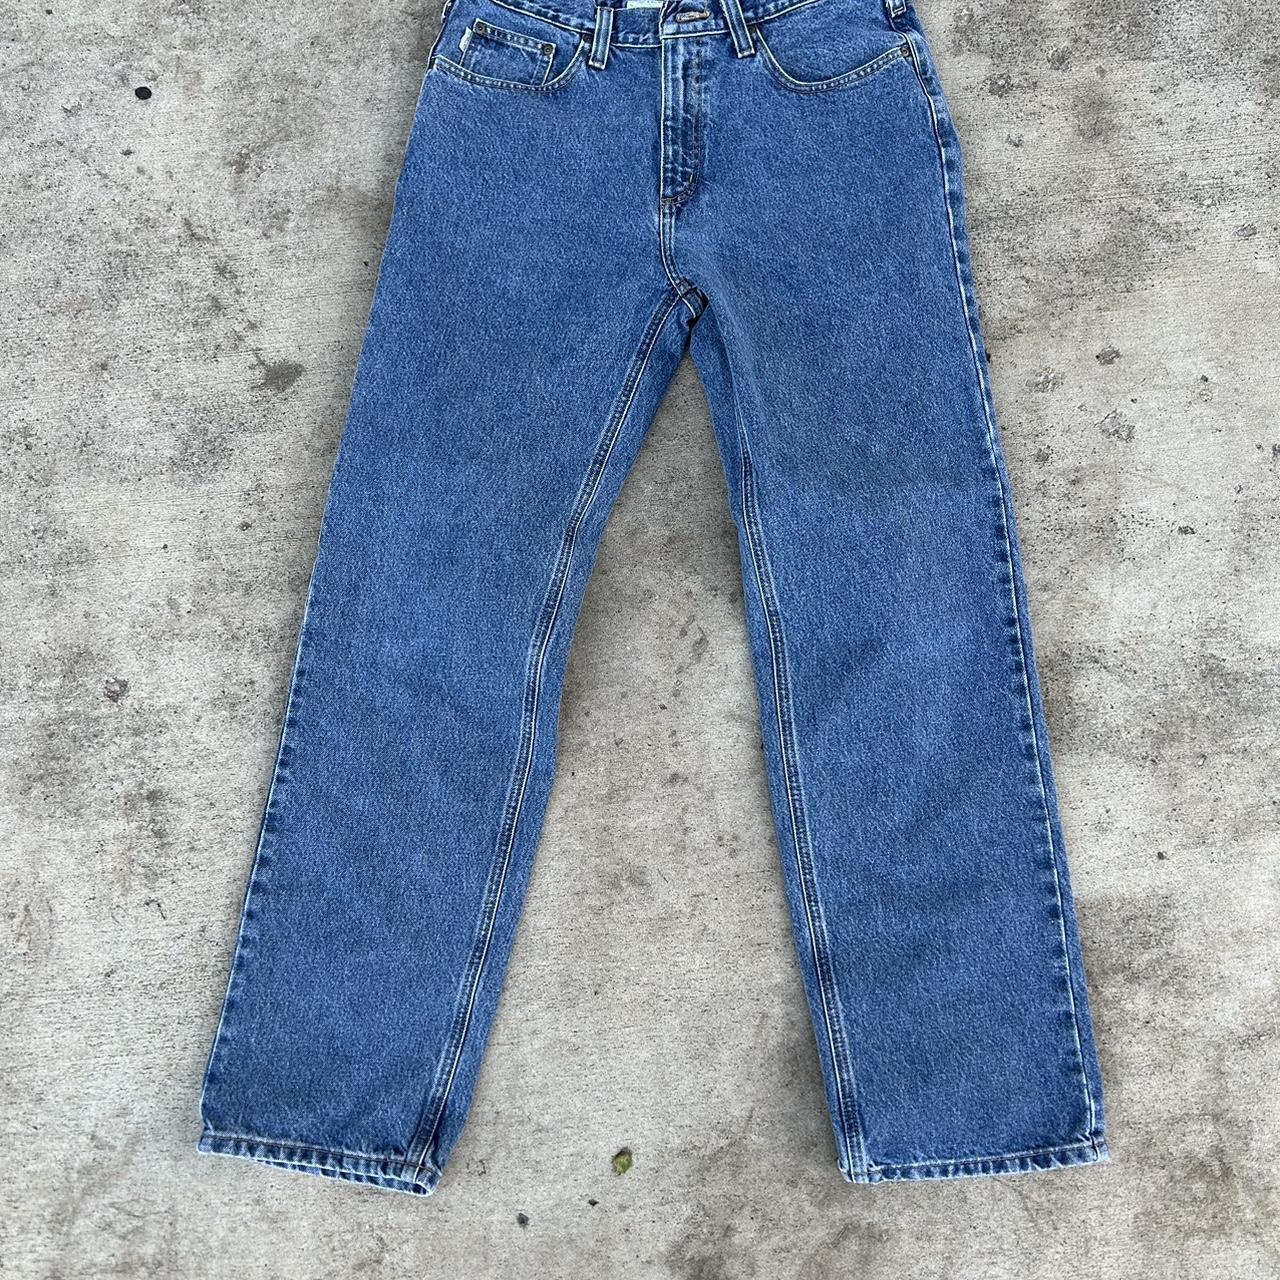 Carhartt Jeans Super high quality... - Depop